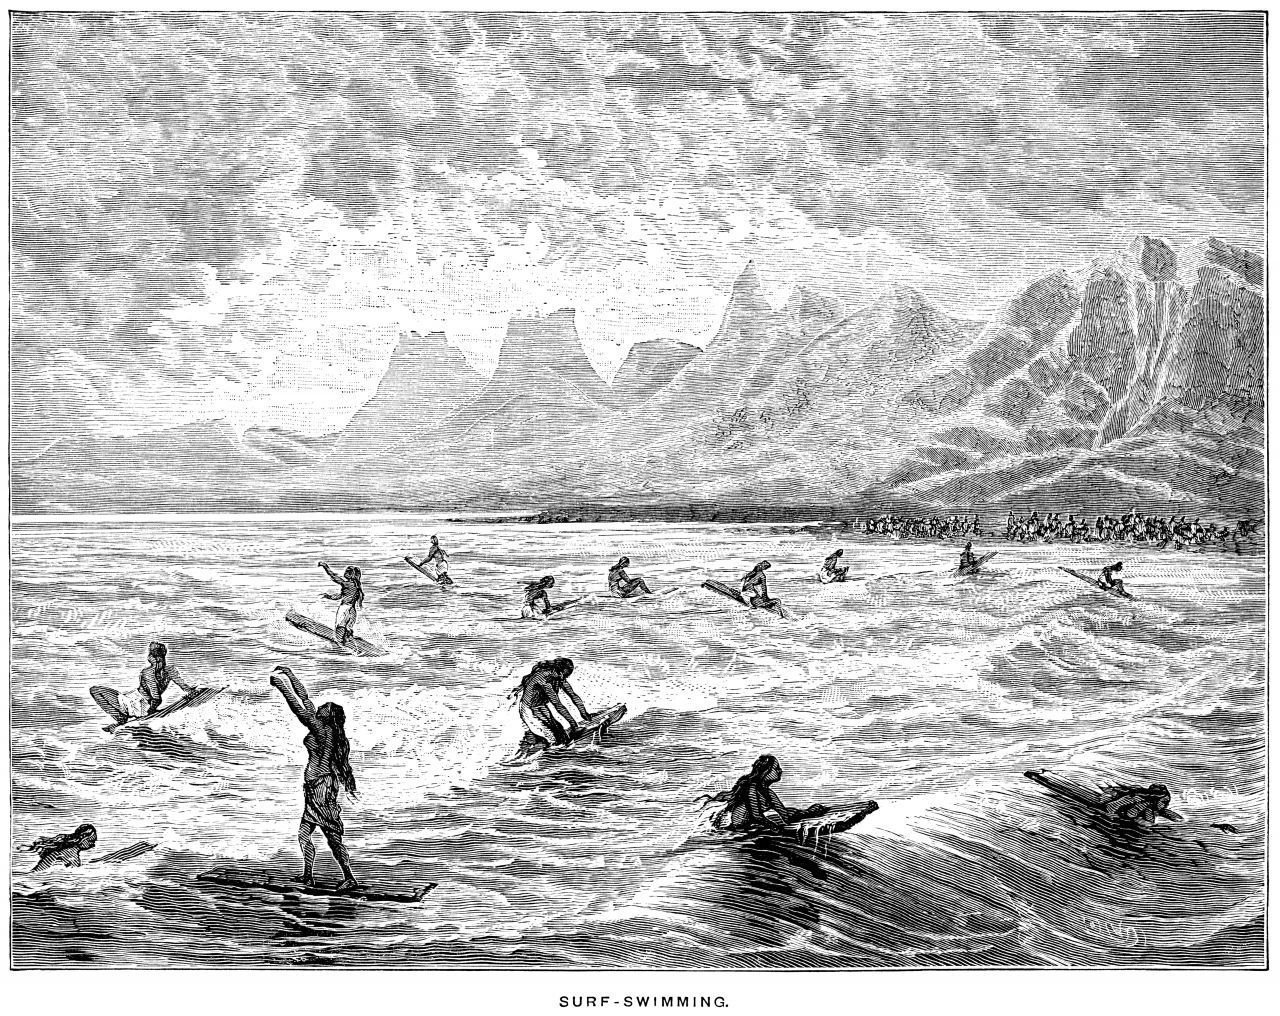 Es begann in Polynesien: Hier entdeckte man Höhlen-Malereien aus dem 12. Jahrhundert, die die ersten Surf-Versuche zeigen. Die Bevölkerung der pazifischen Insel-Gruppe setzte beim Abreiten der Wellen zunächst nur den Körper ein und erfanden damit das Body-Surfing. Später gaben Binsen-Bündel, kleinere Baumstämme, Holzplanken oder Kanu-Spitzen dem Körper mehr Auftrieb. Im Lauf der Zeit dann surften die Polynesier:innen auf größ